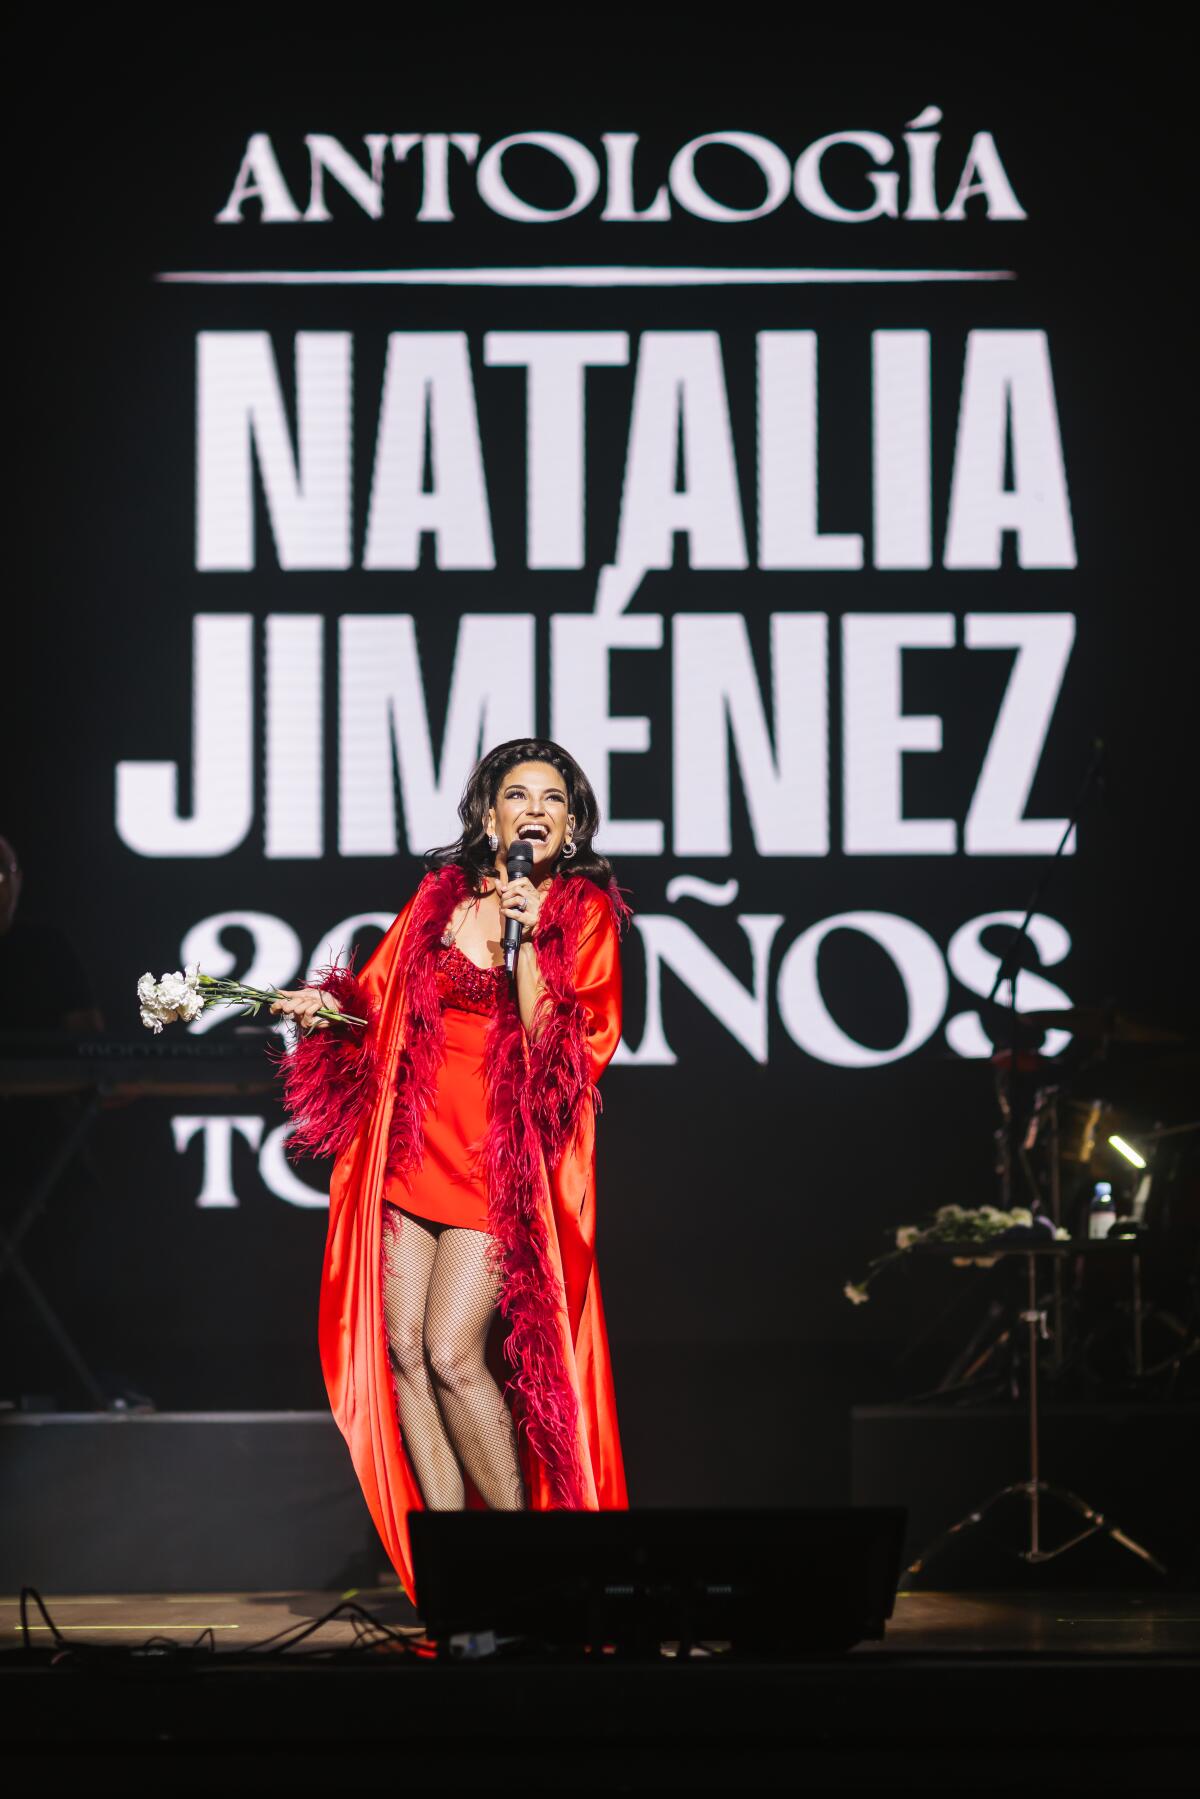 20 a?os de éxitos, experiencias y satisfacciones son las que vive Natalia Jiménez con su tour Antología.